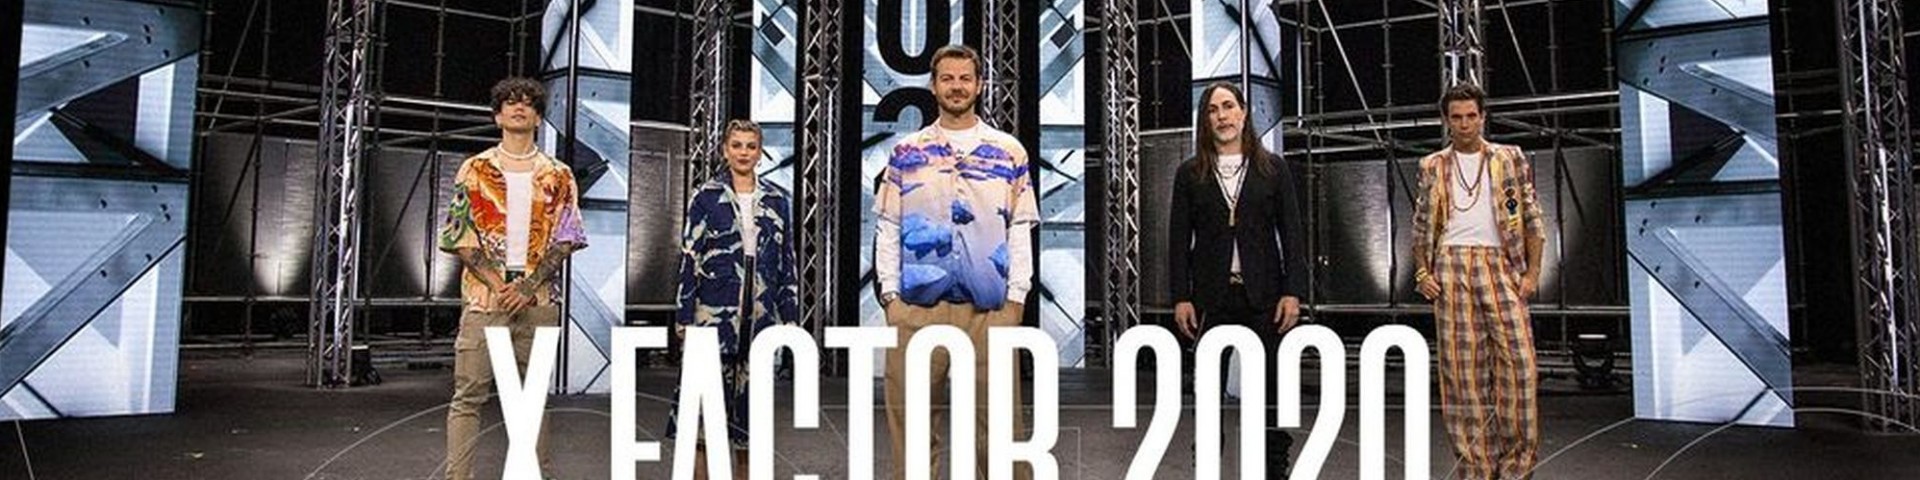 X Factor 2020 oggi: anticipazioni del 1 ottobre